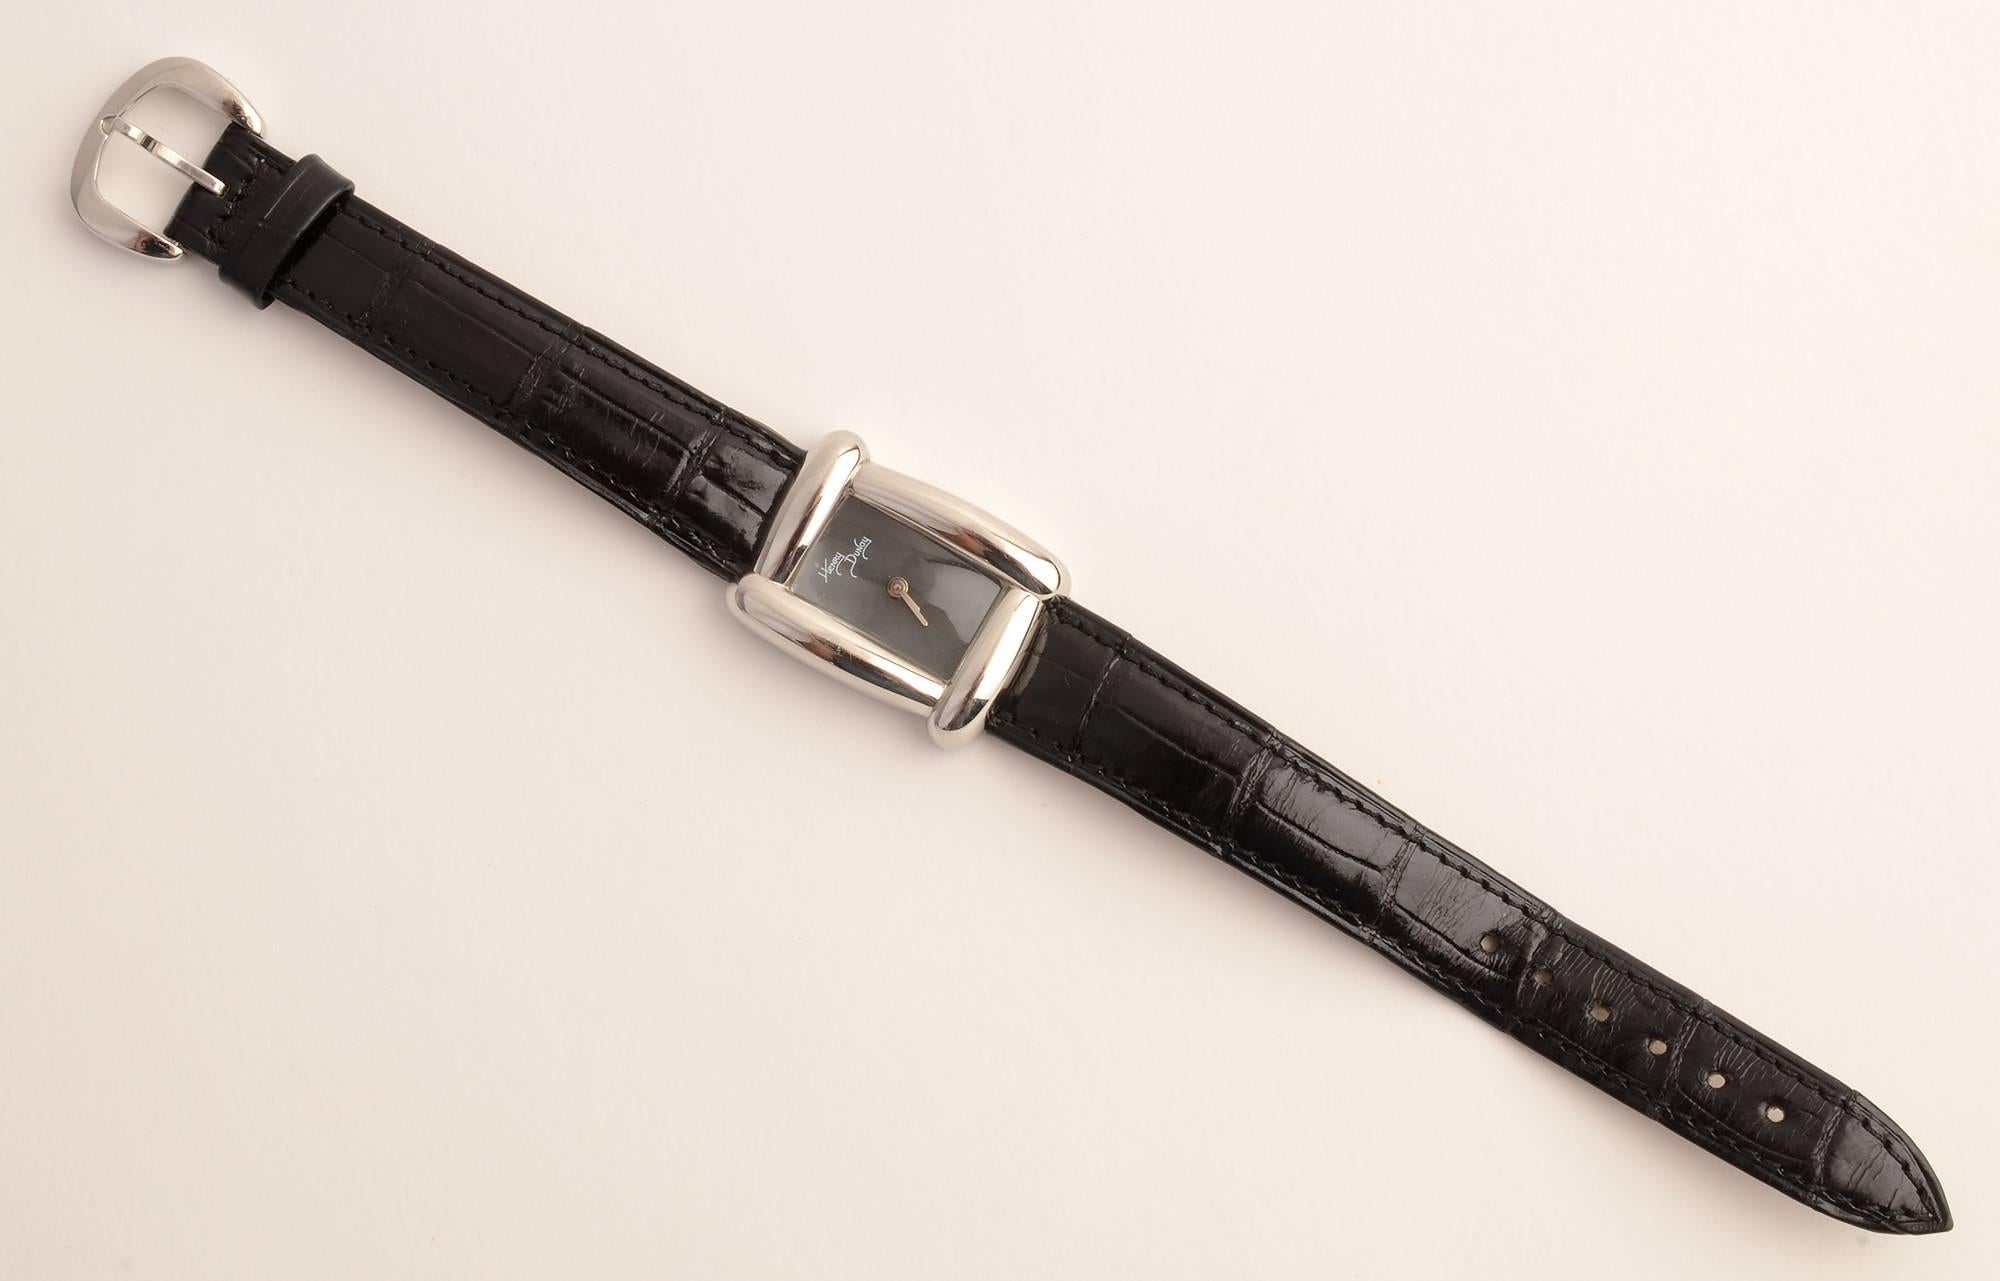 Stilvolle Armbanduhr des amerikanischen Schmuckdesigners Henry Dunay. Das rechteckige schwarze Zifferblatt wird von dem für seine Uhren charakteristischen kurvenförmigen Design eingerahmt. Das schwarze Lederband ist original. 